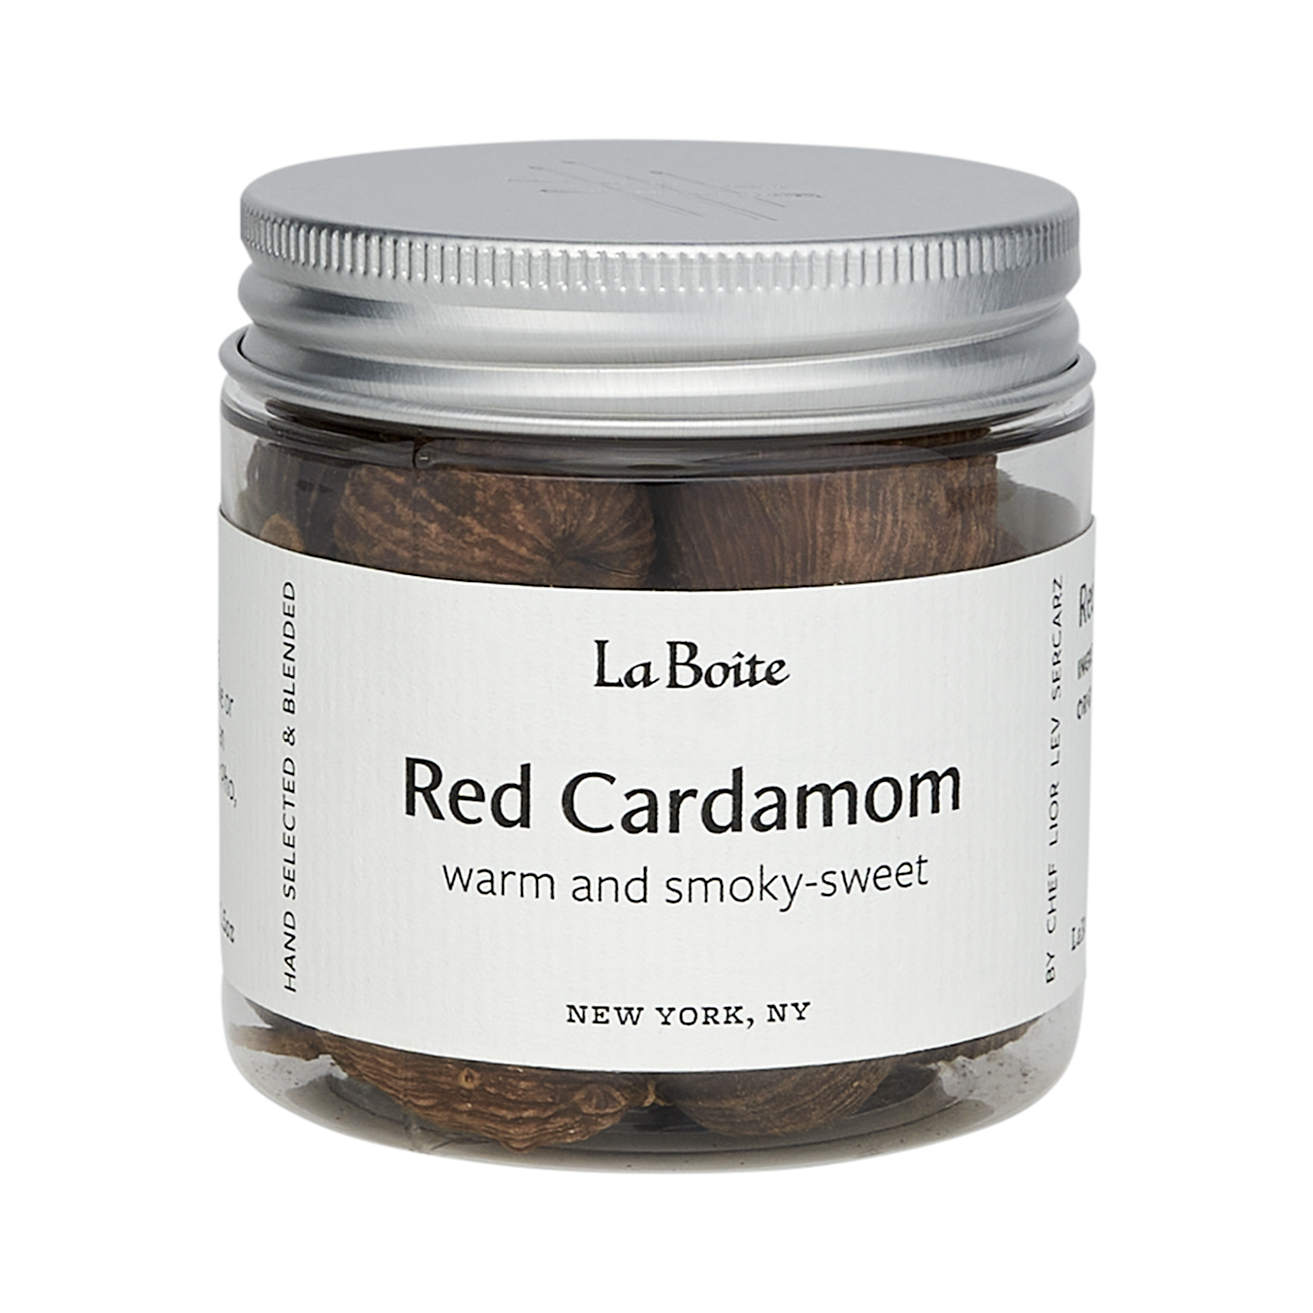 Red Cardamom